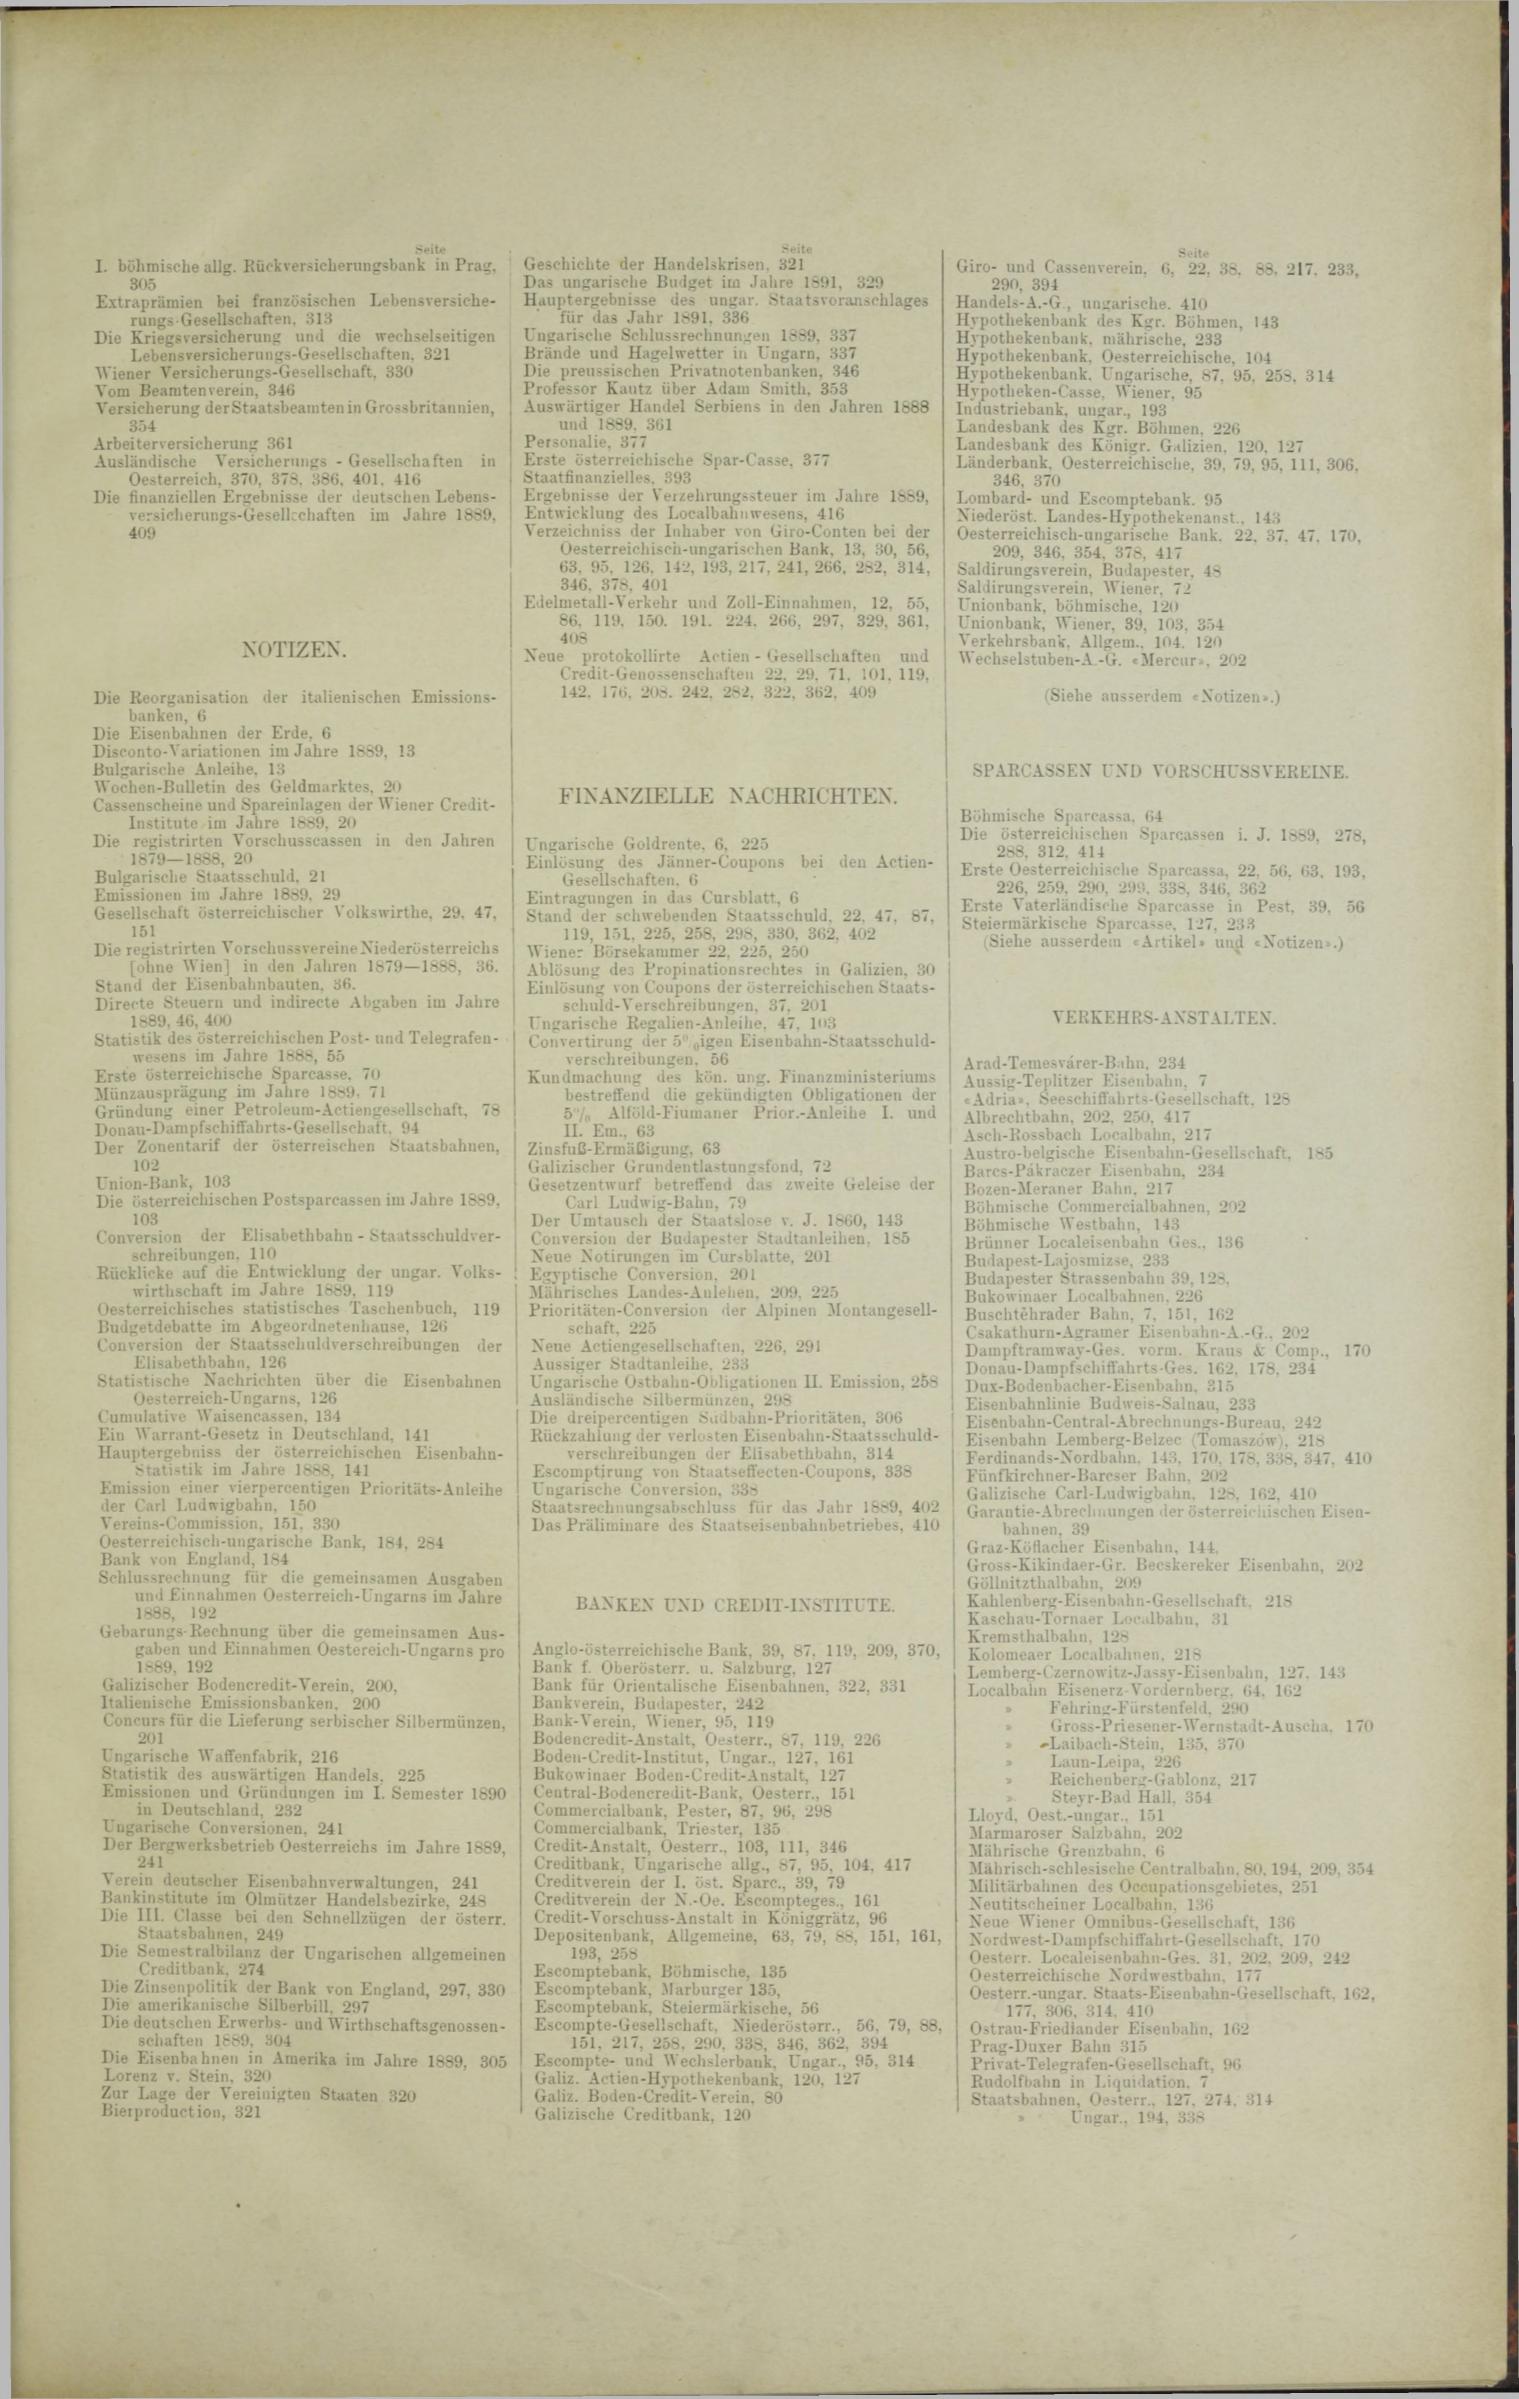 Der Tresor 20.02.1890 - Seite 11